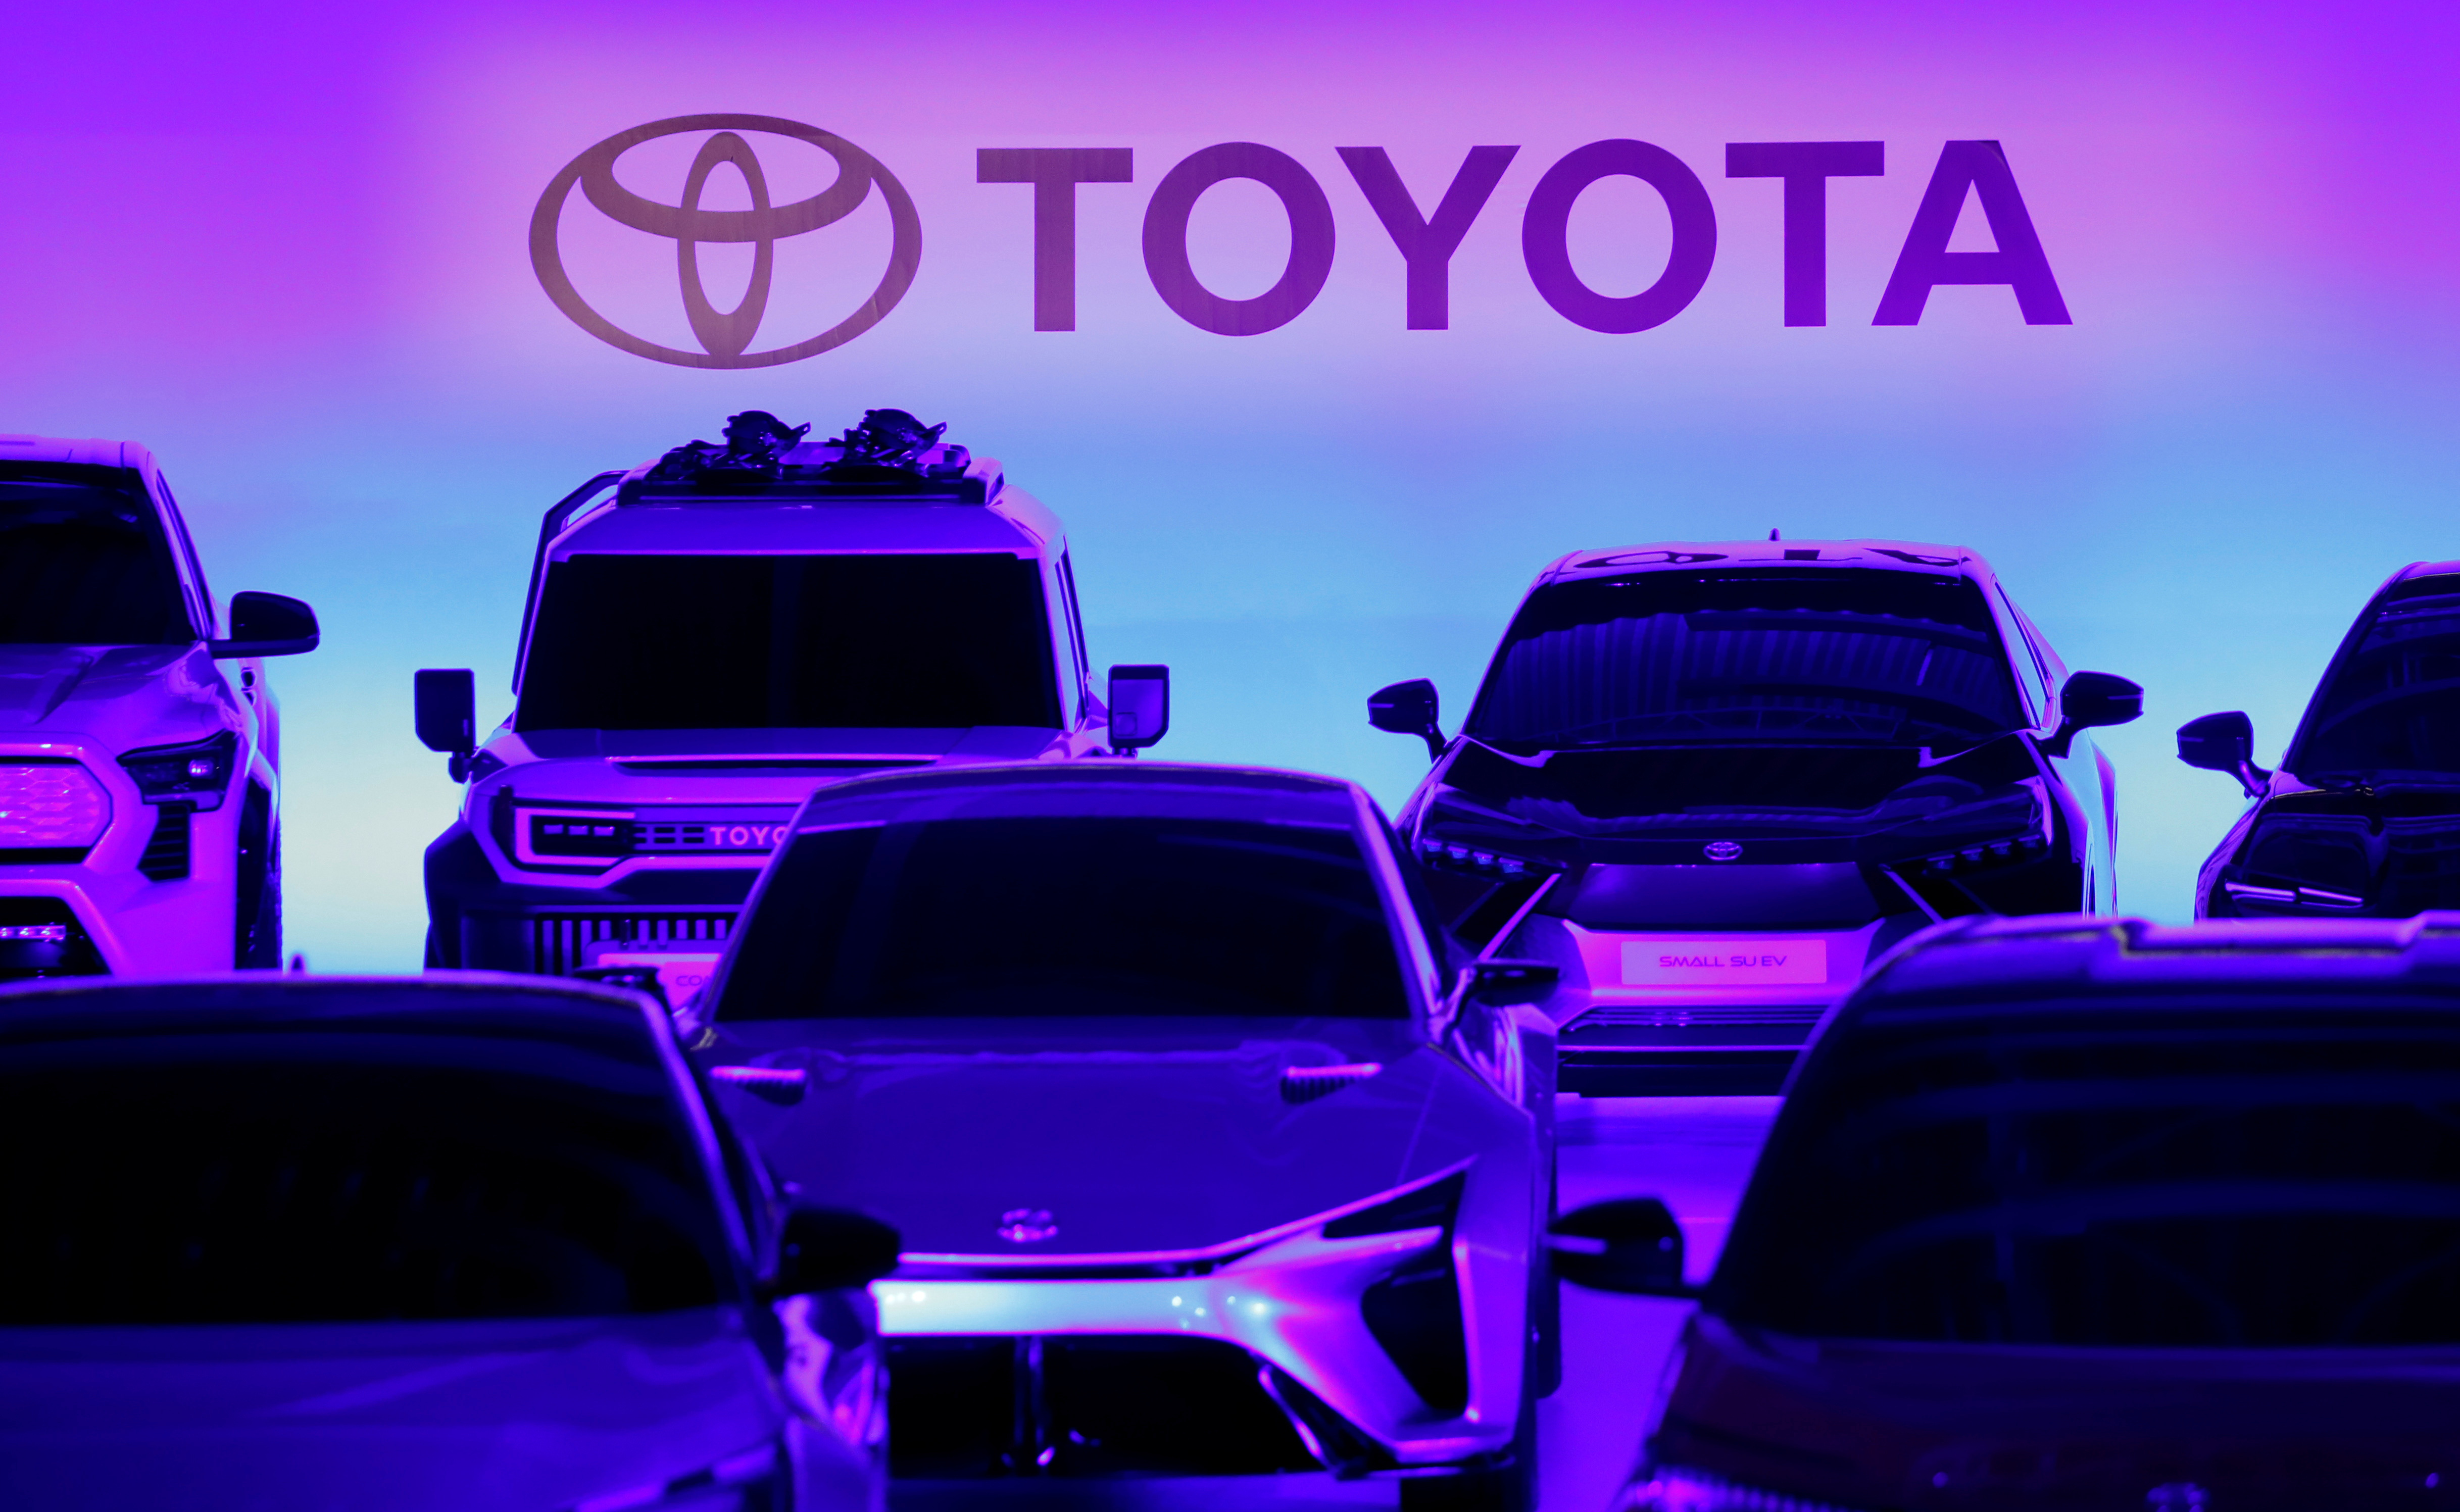 Une panne informatique géante oblige Toyota à mettre à l'arrêt la quasi-totalité de ses usines japonaises